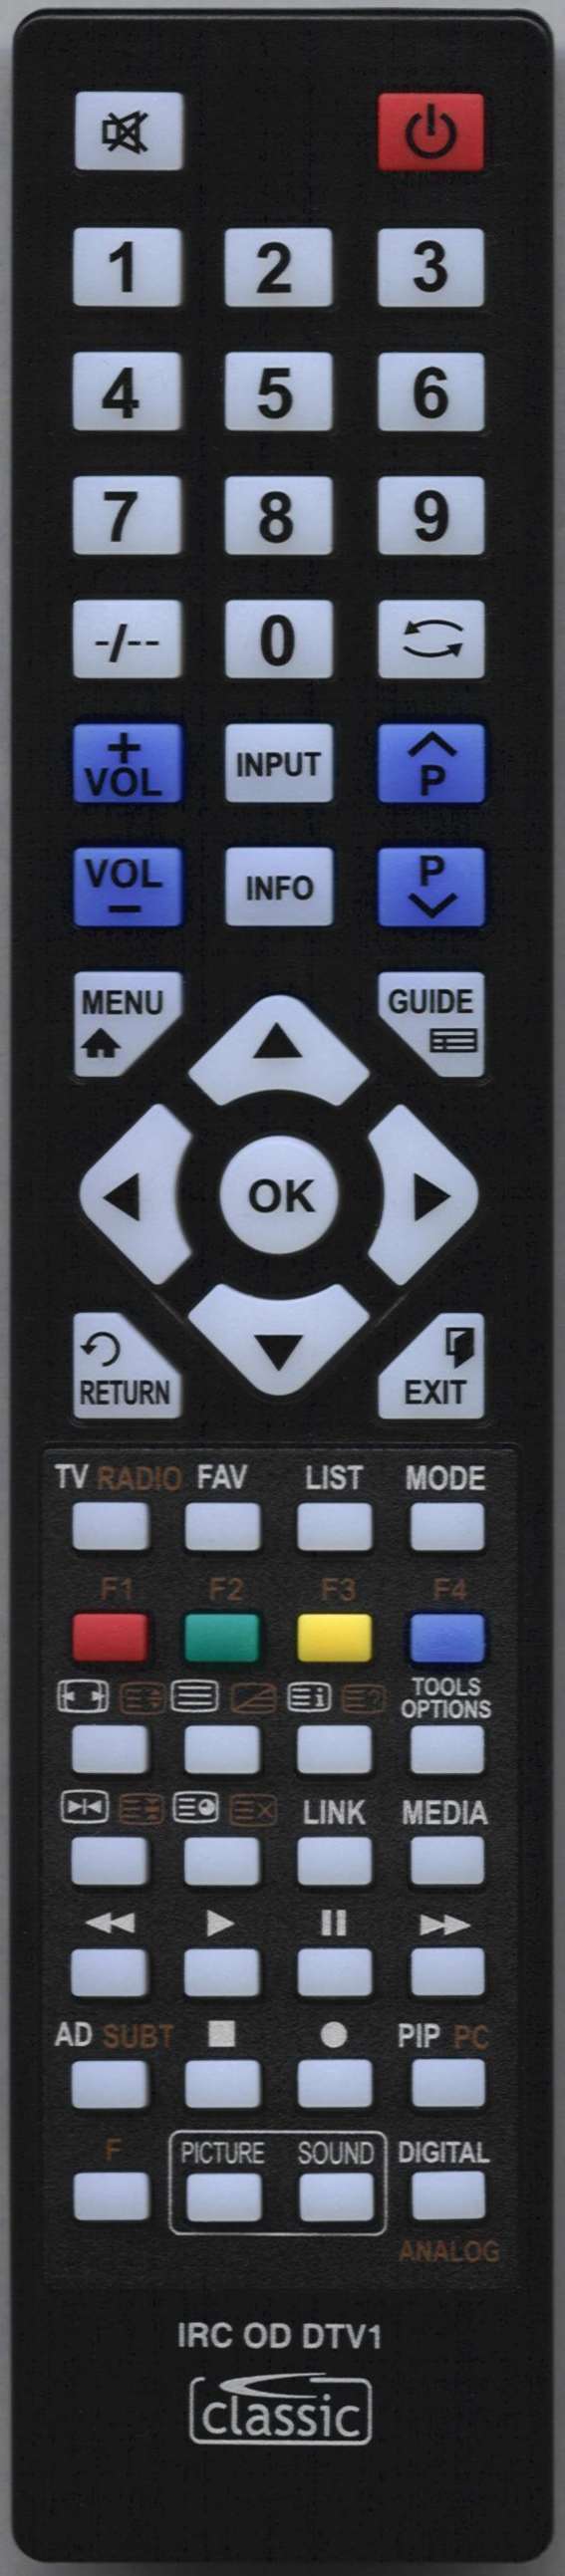 NEON C1997F Remote Control Alternative